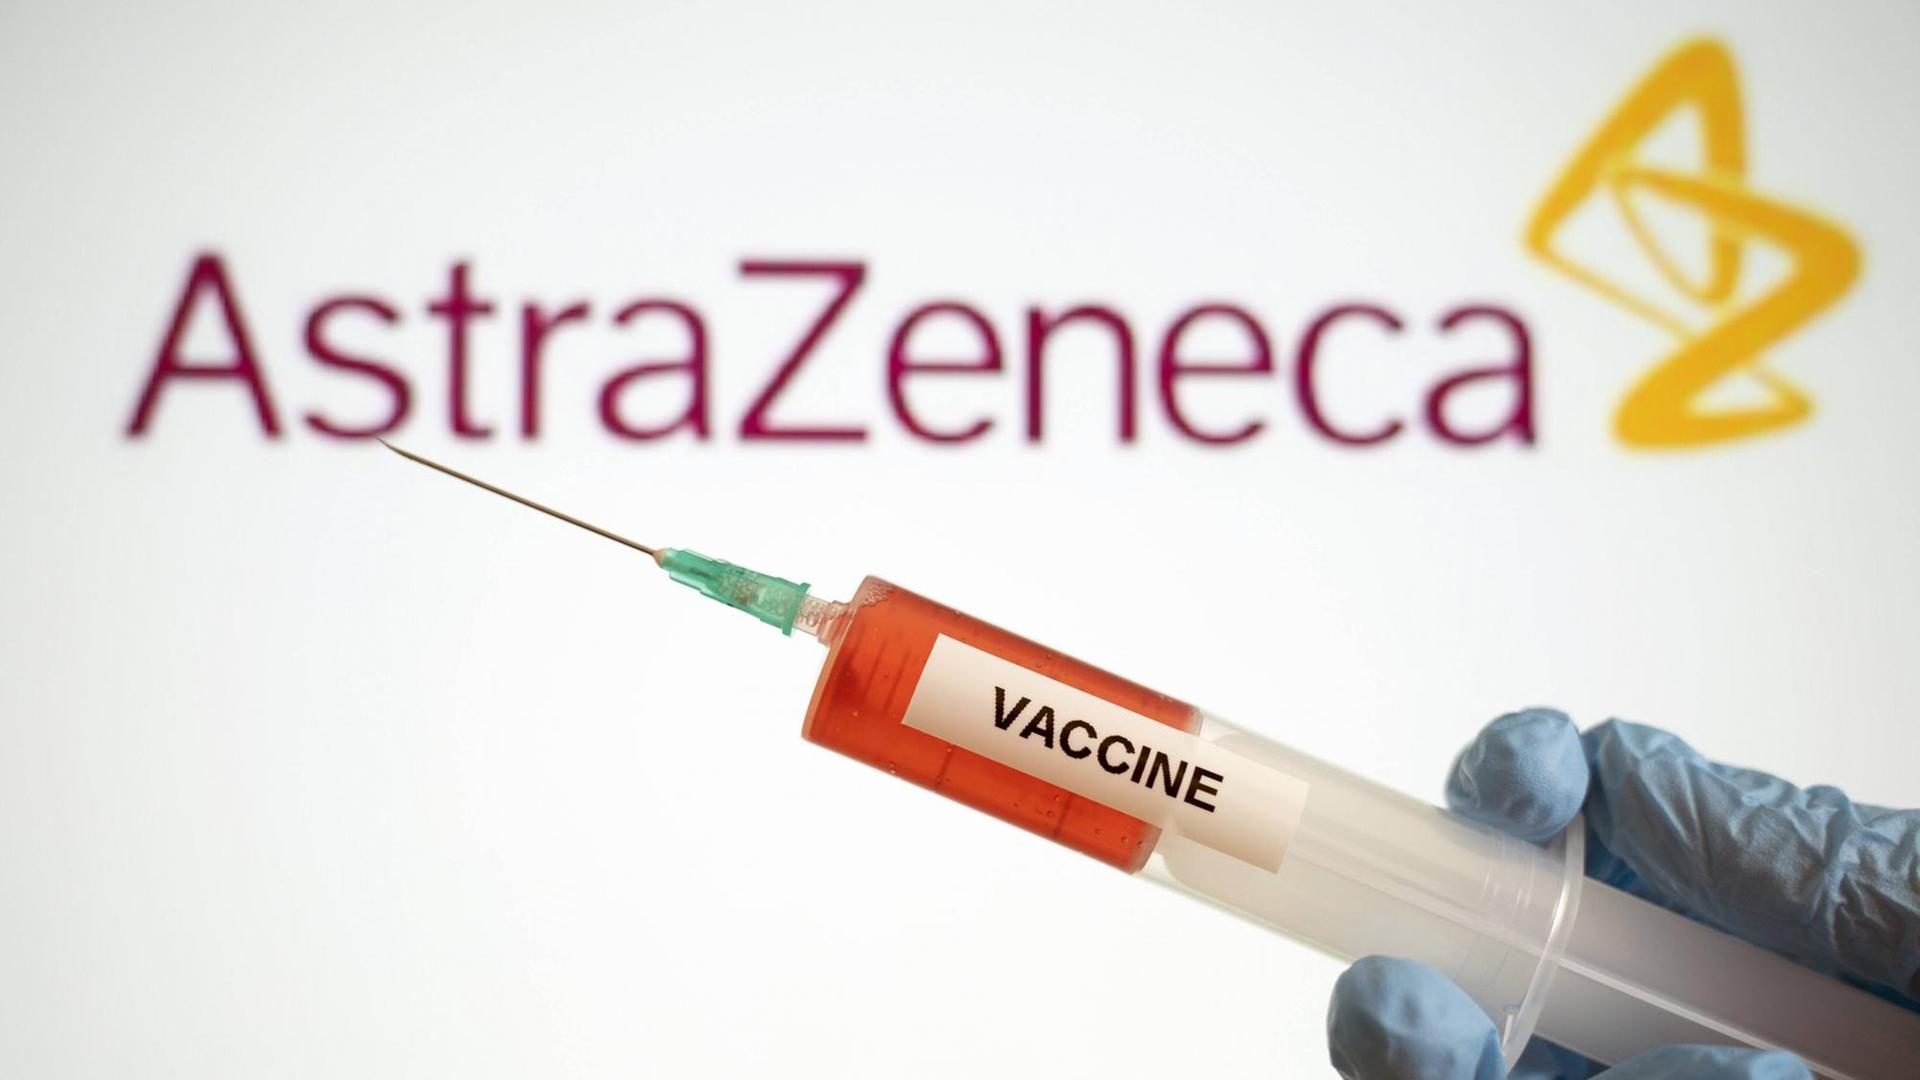 Symbolbild eines Corona-Impfstoffs mit dem Logo des Pharmakonzerns AstraZeneca